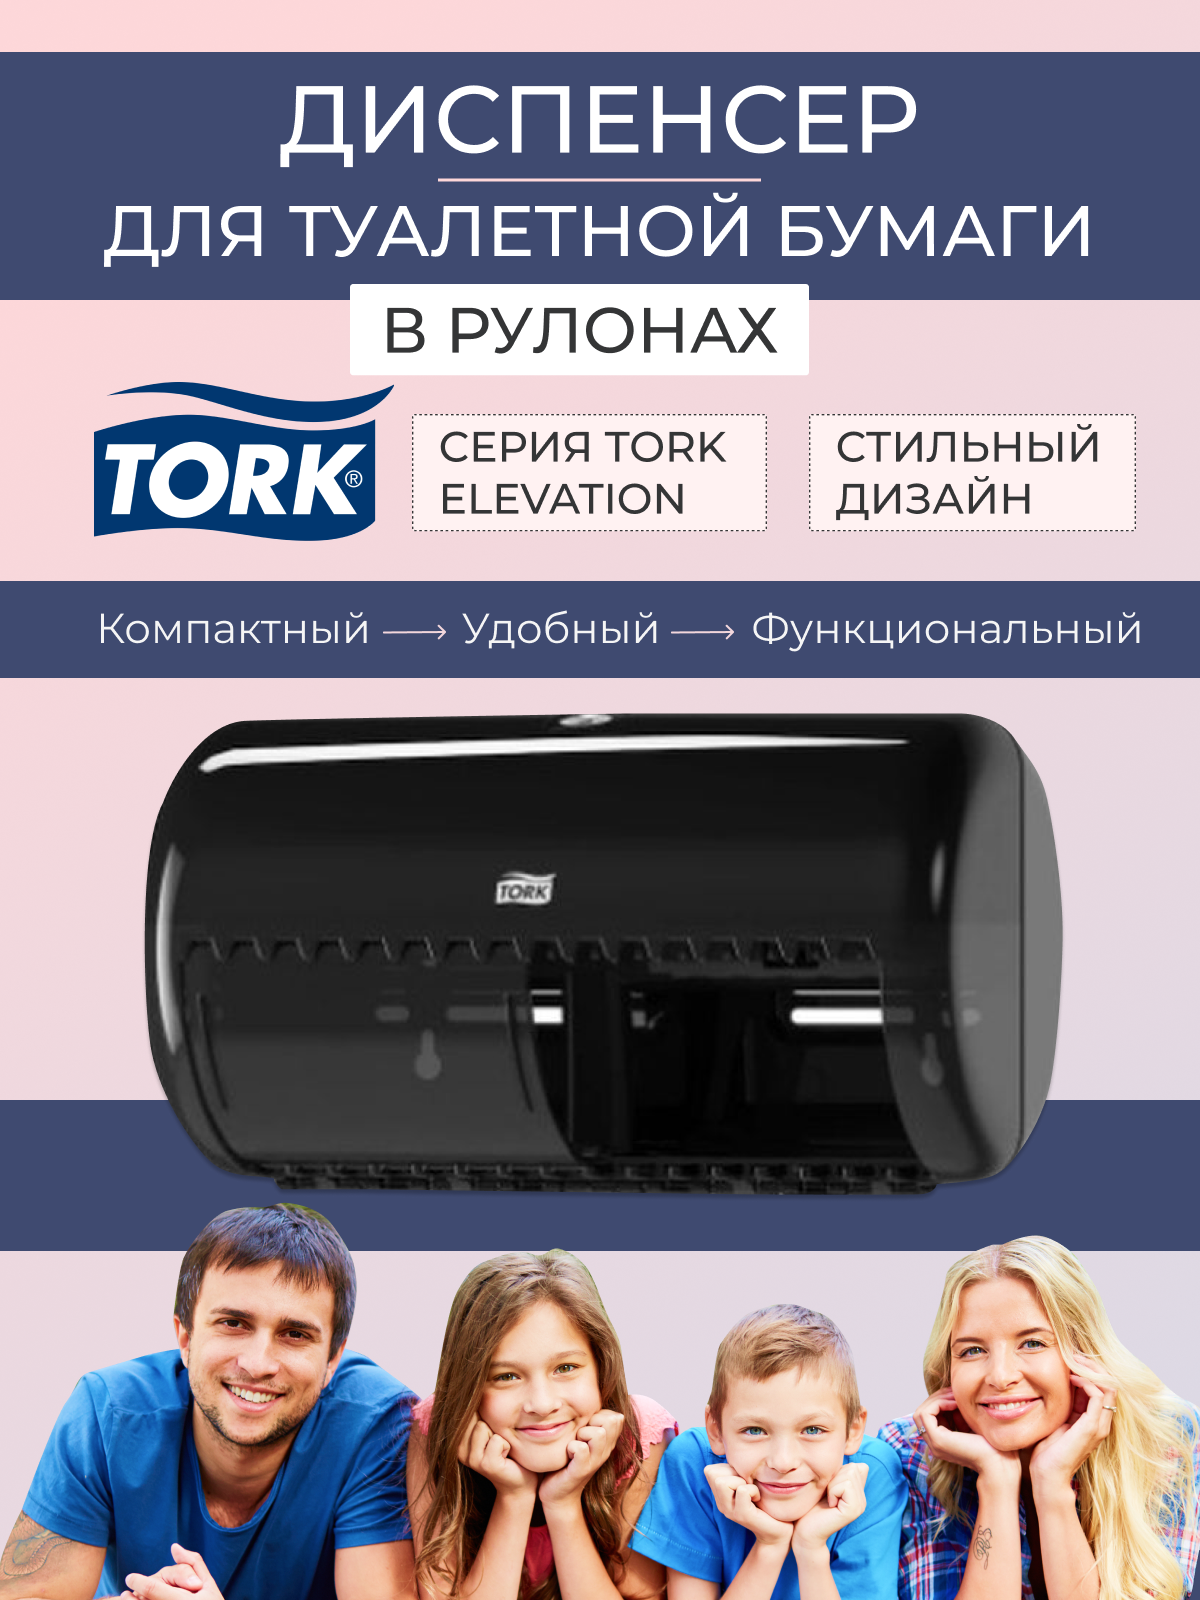 Настенные аксессуары для ванной Tork - фото №10